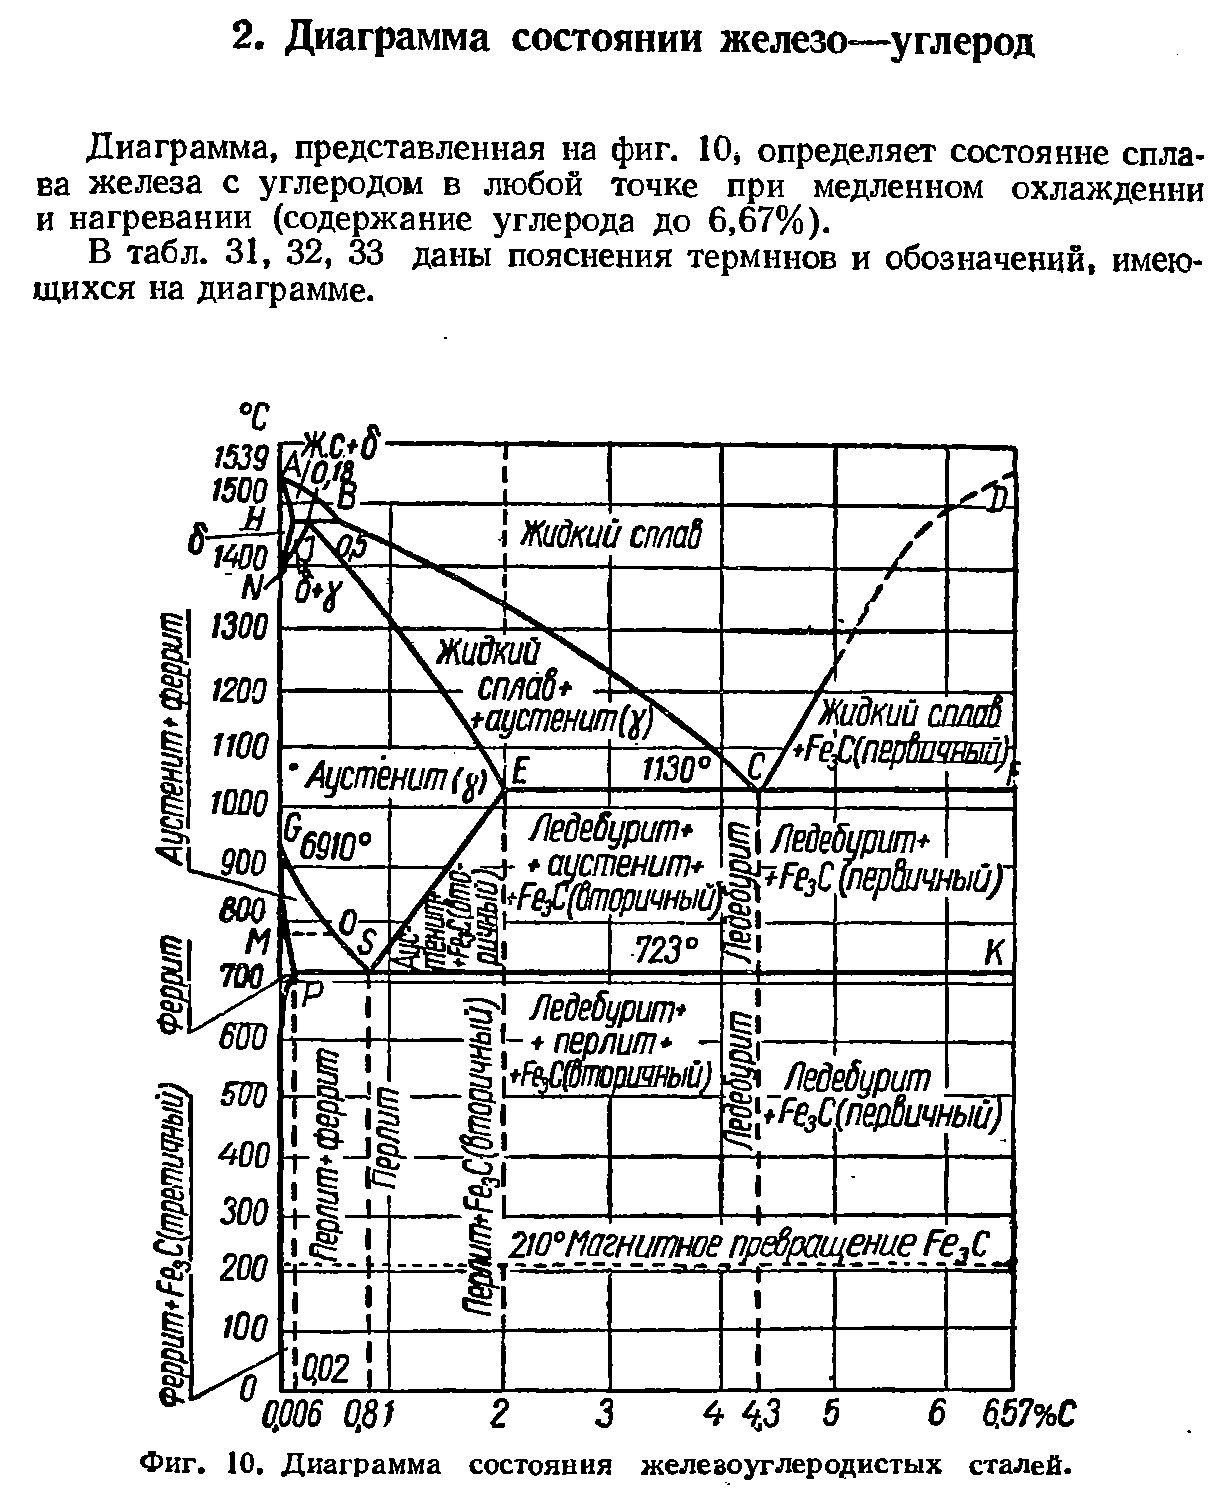 Диаграмма, представленная на фиг. 10, определяет состояние сплава железа с углеродом в любой точке при медленном охлаждении и нагревании (содержание углерода до 6,67%).